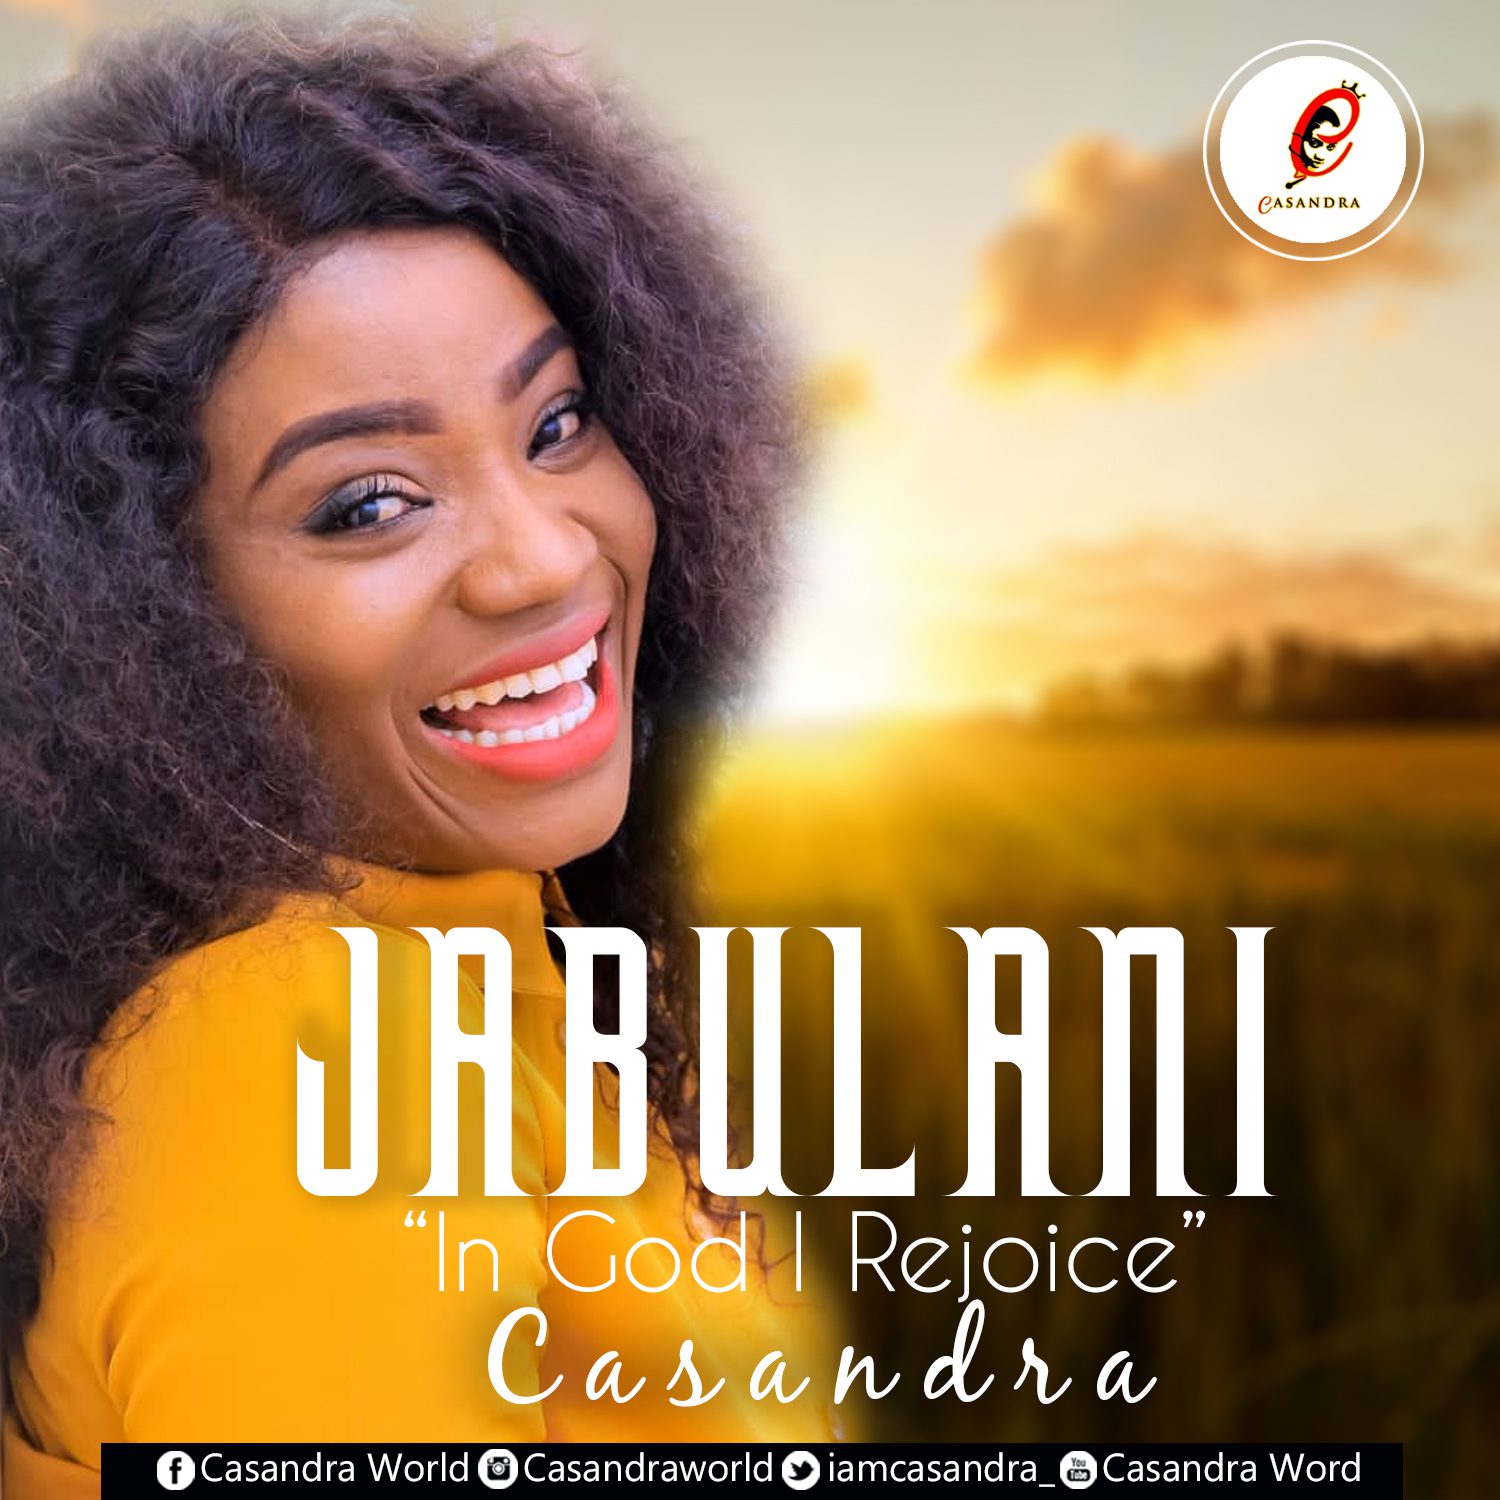 Gospel Singer, Casandra ‘Rejoices In God’ With New Single “Jabulani” – Listen Now!